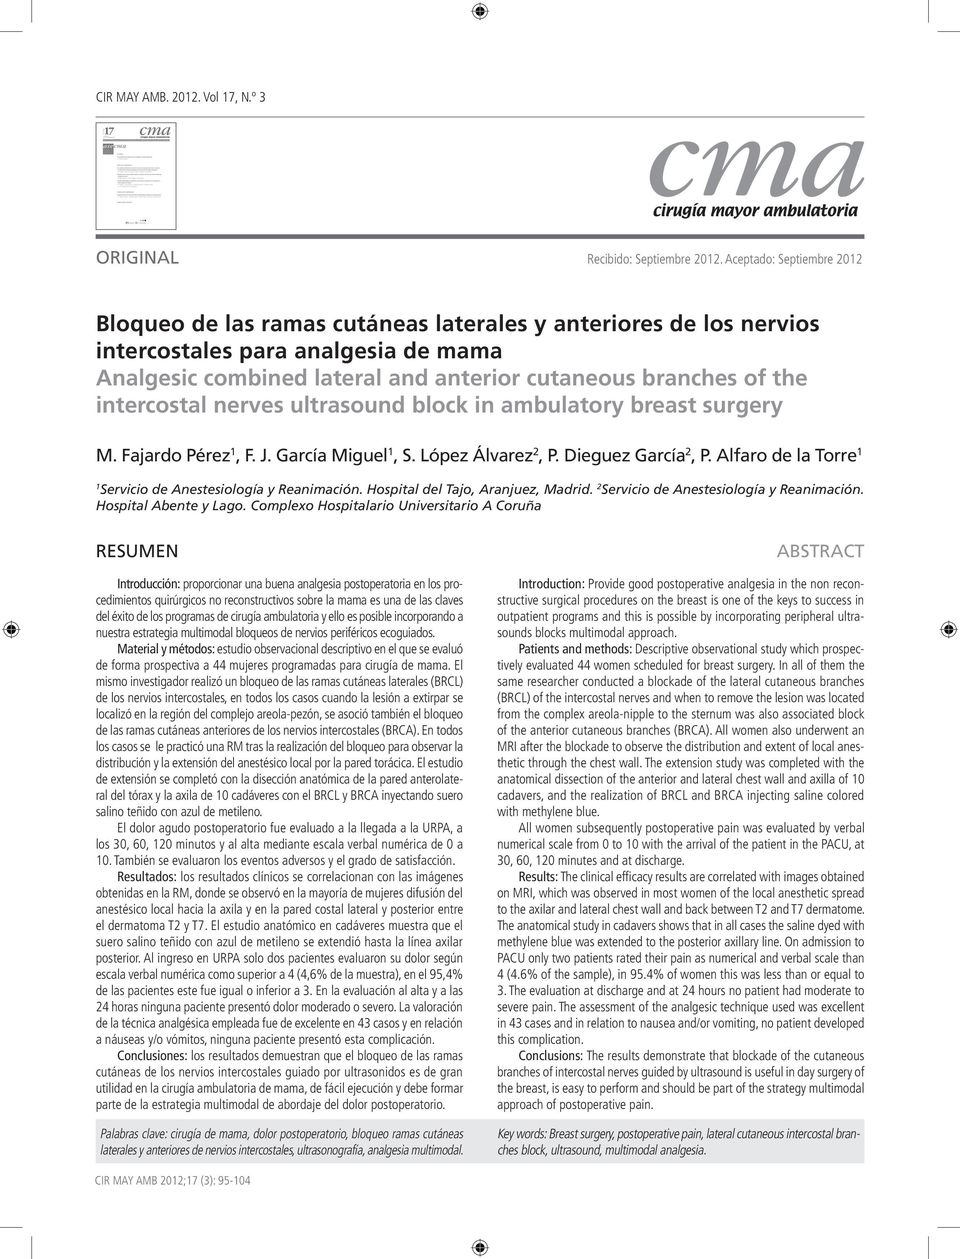 intercostal nerves ultrasound block in ambulatory breast surgery M. Fajardo Pérez 1, F. J. García Miguel 1, S. López Álvarez 2, P. Dieguez García 2, P.